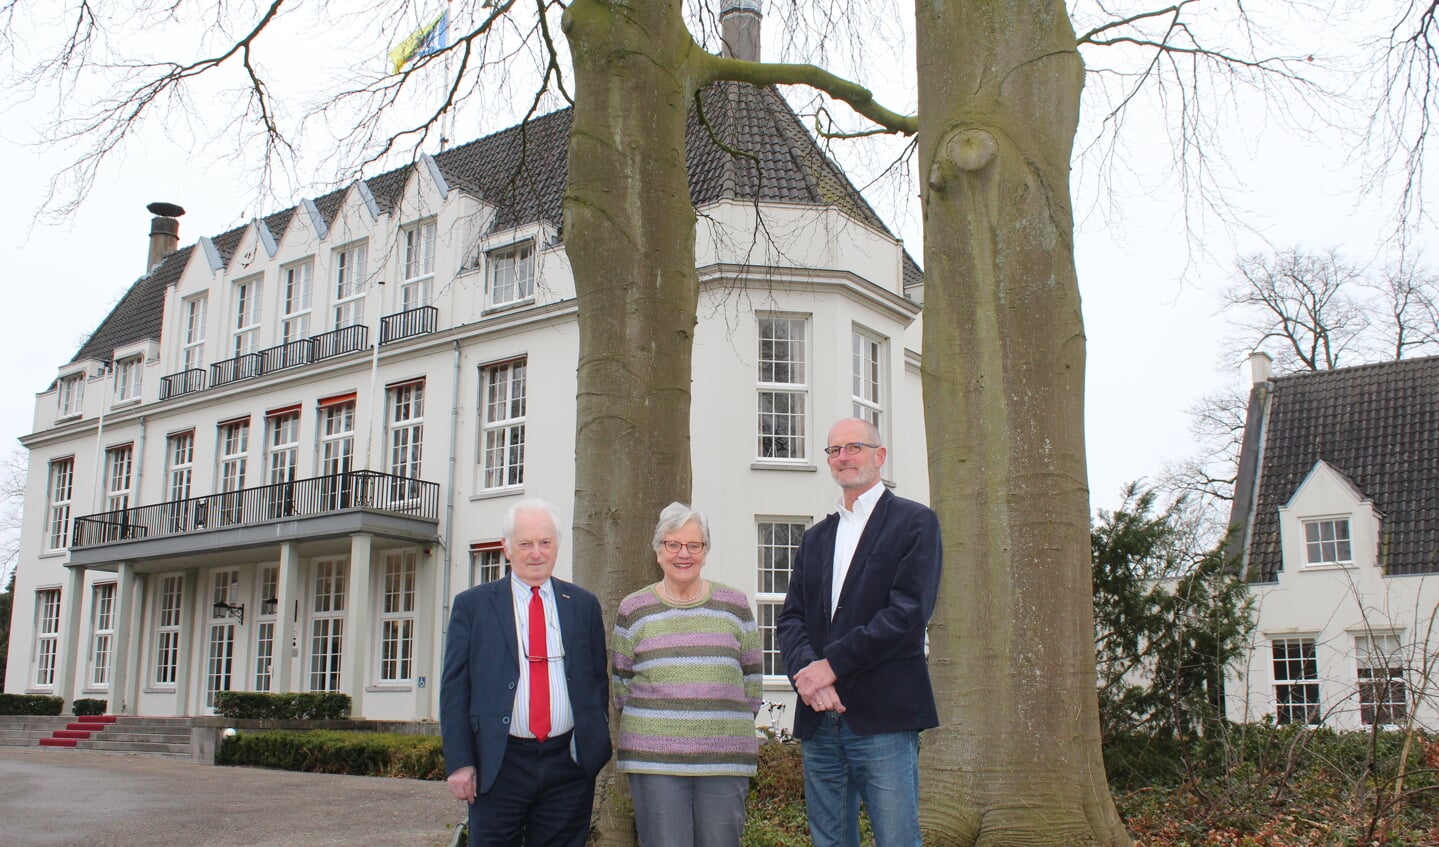 V.l.n.r. Karel Beesemer, Lied Haan en Jan Schuurman voor de inmiddels volgroeide bomen. [foto Henk van de Bunt]